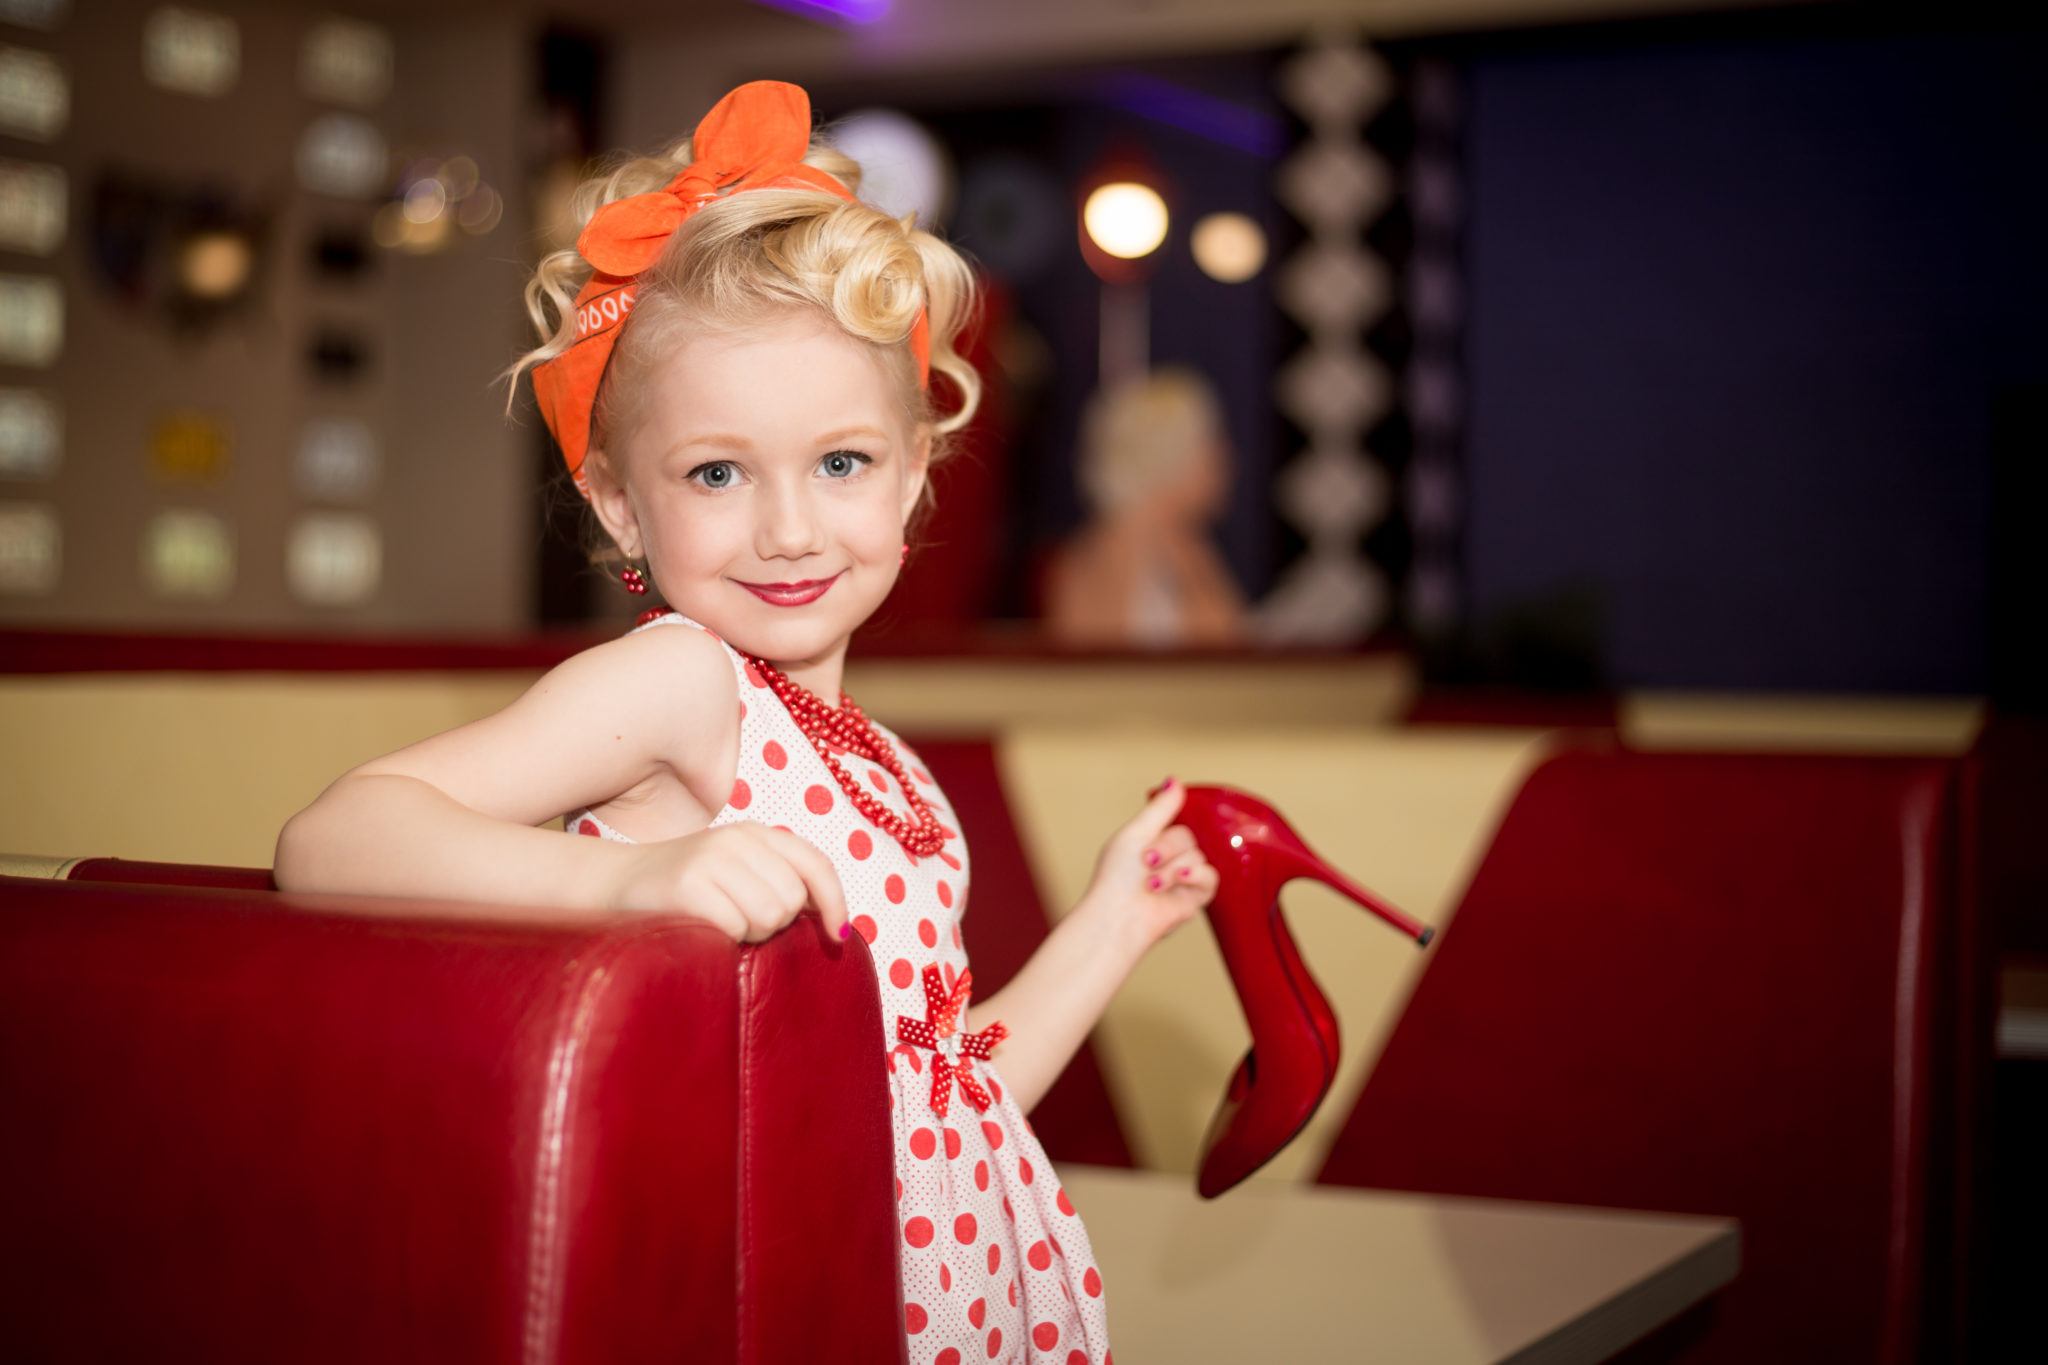 Детское модельное агентство в москве от 1 года отправить фото